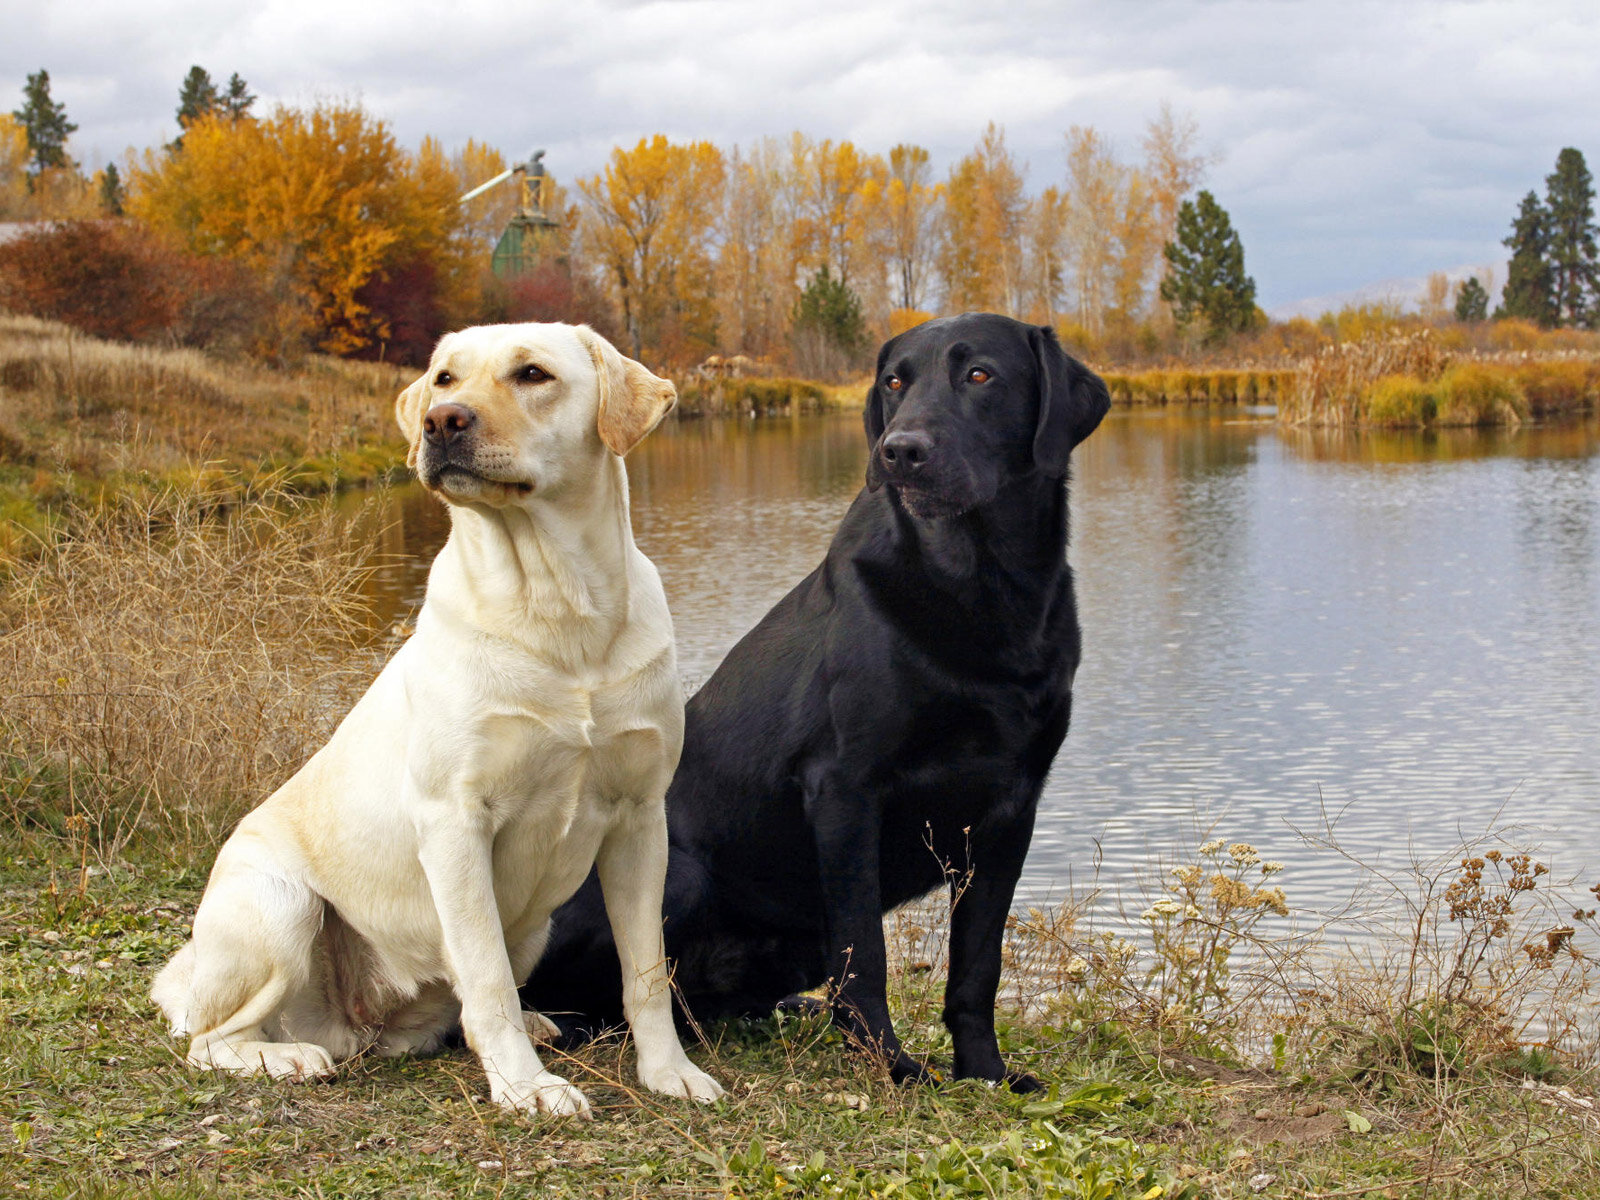 göl kıyısında oturmuş siyah ve beyaz iki köpek